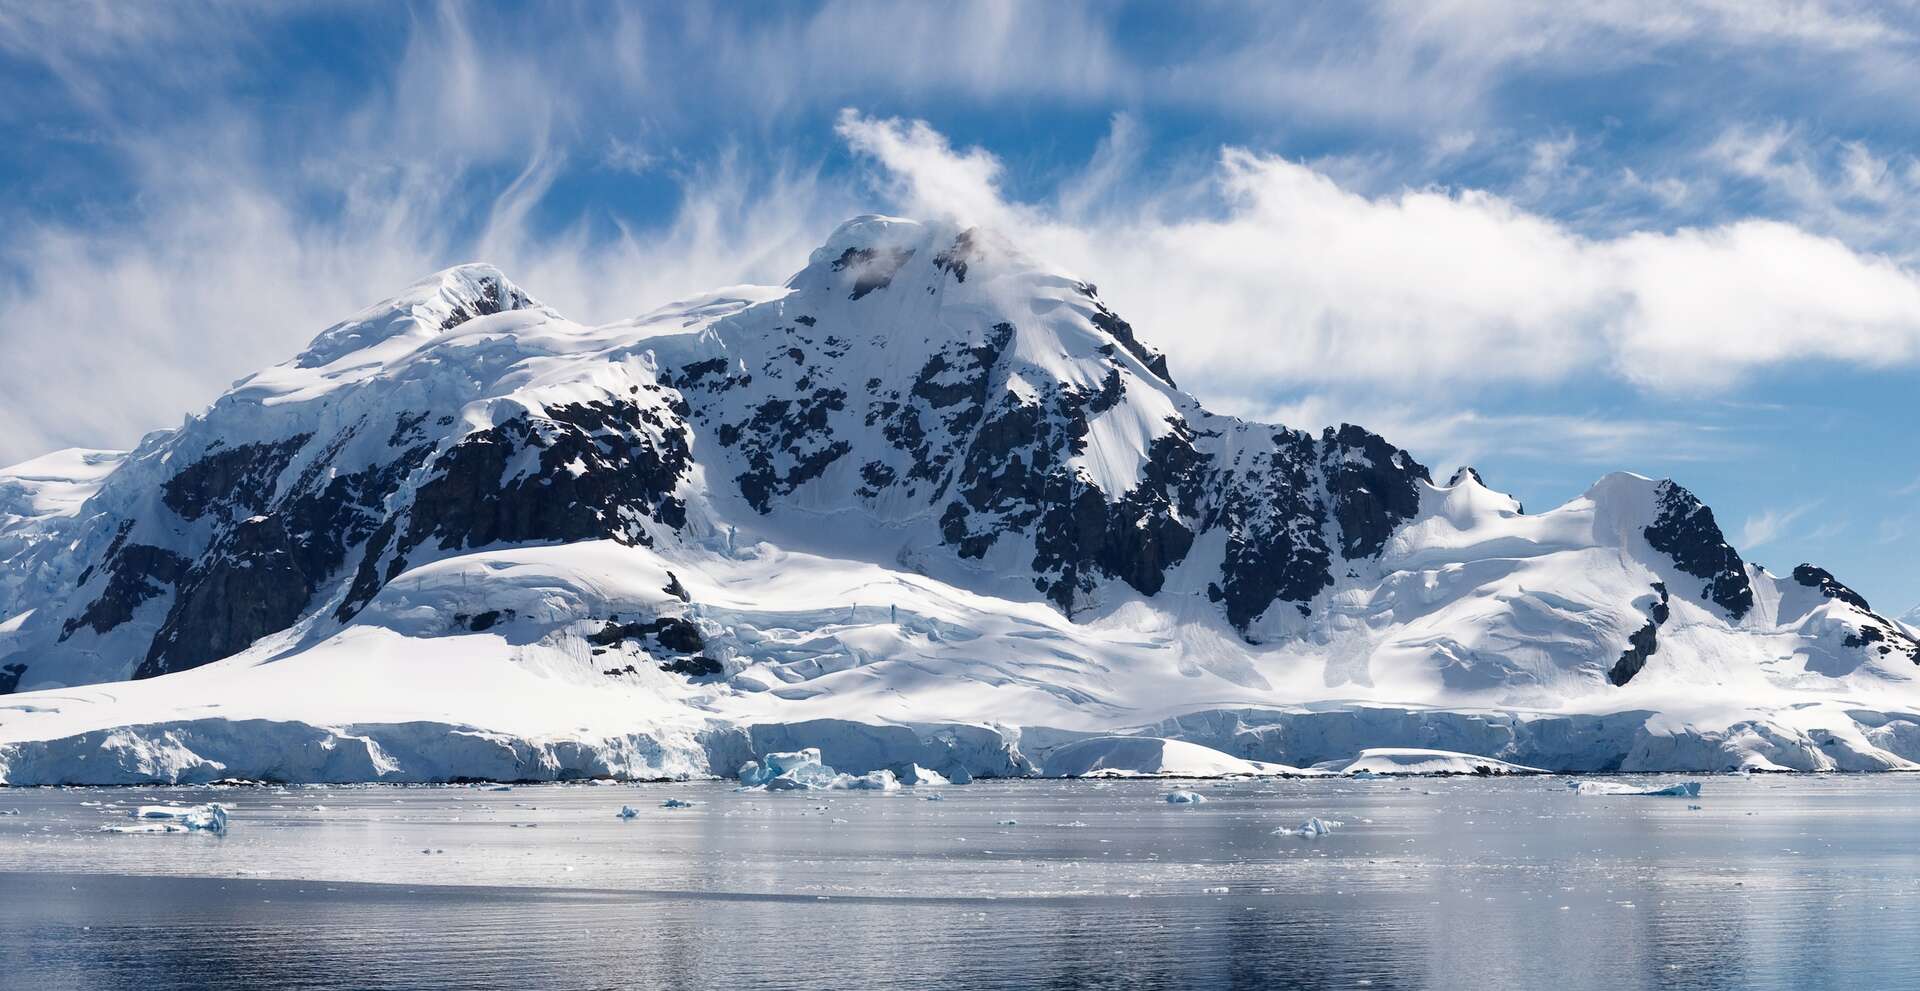 Les satellites montrent une inquiétante fuite en avant des glaciers en Antarctique